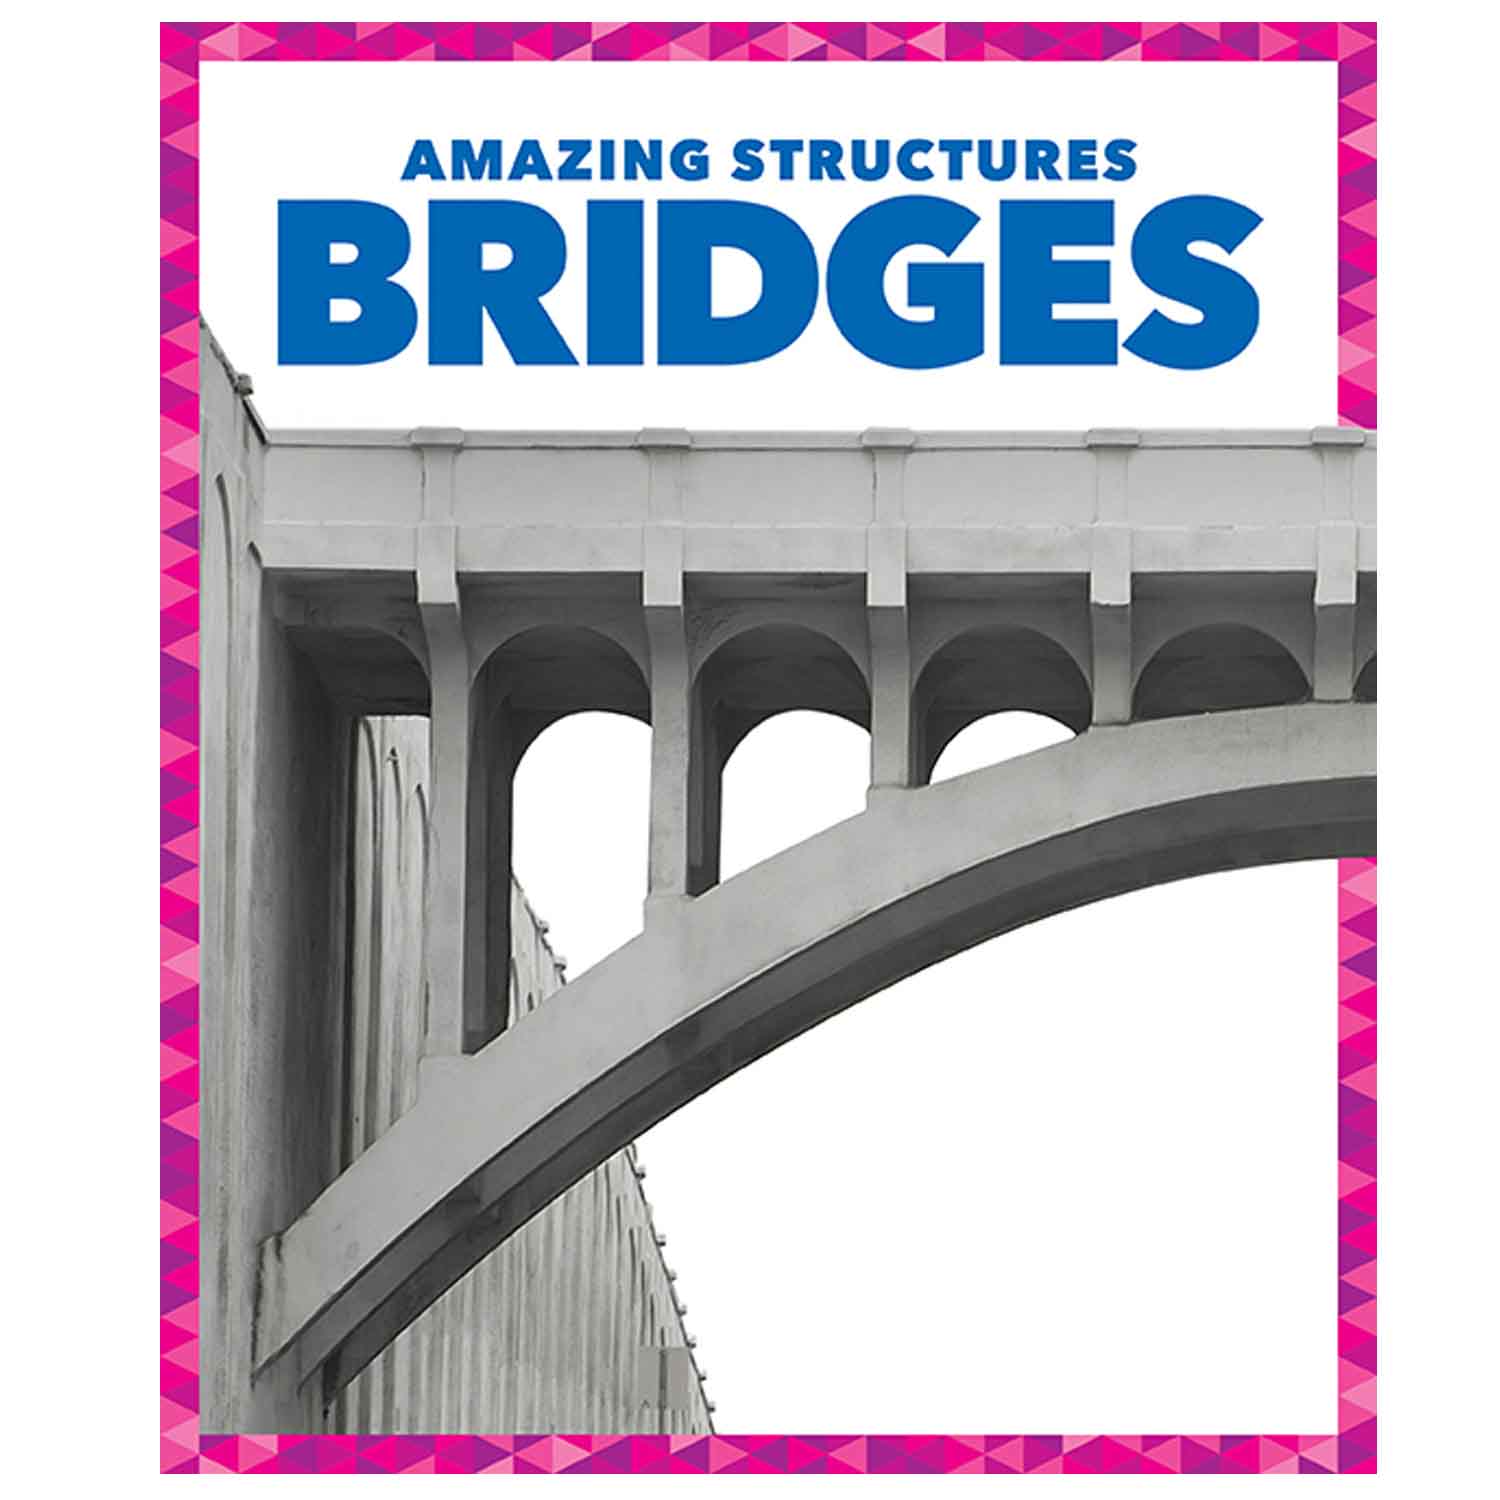 Amazing Structures Bridges